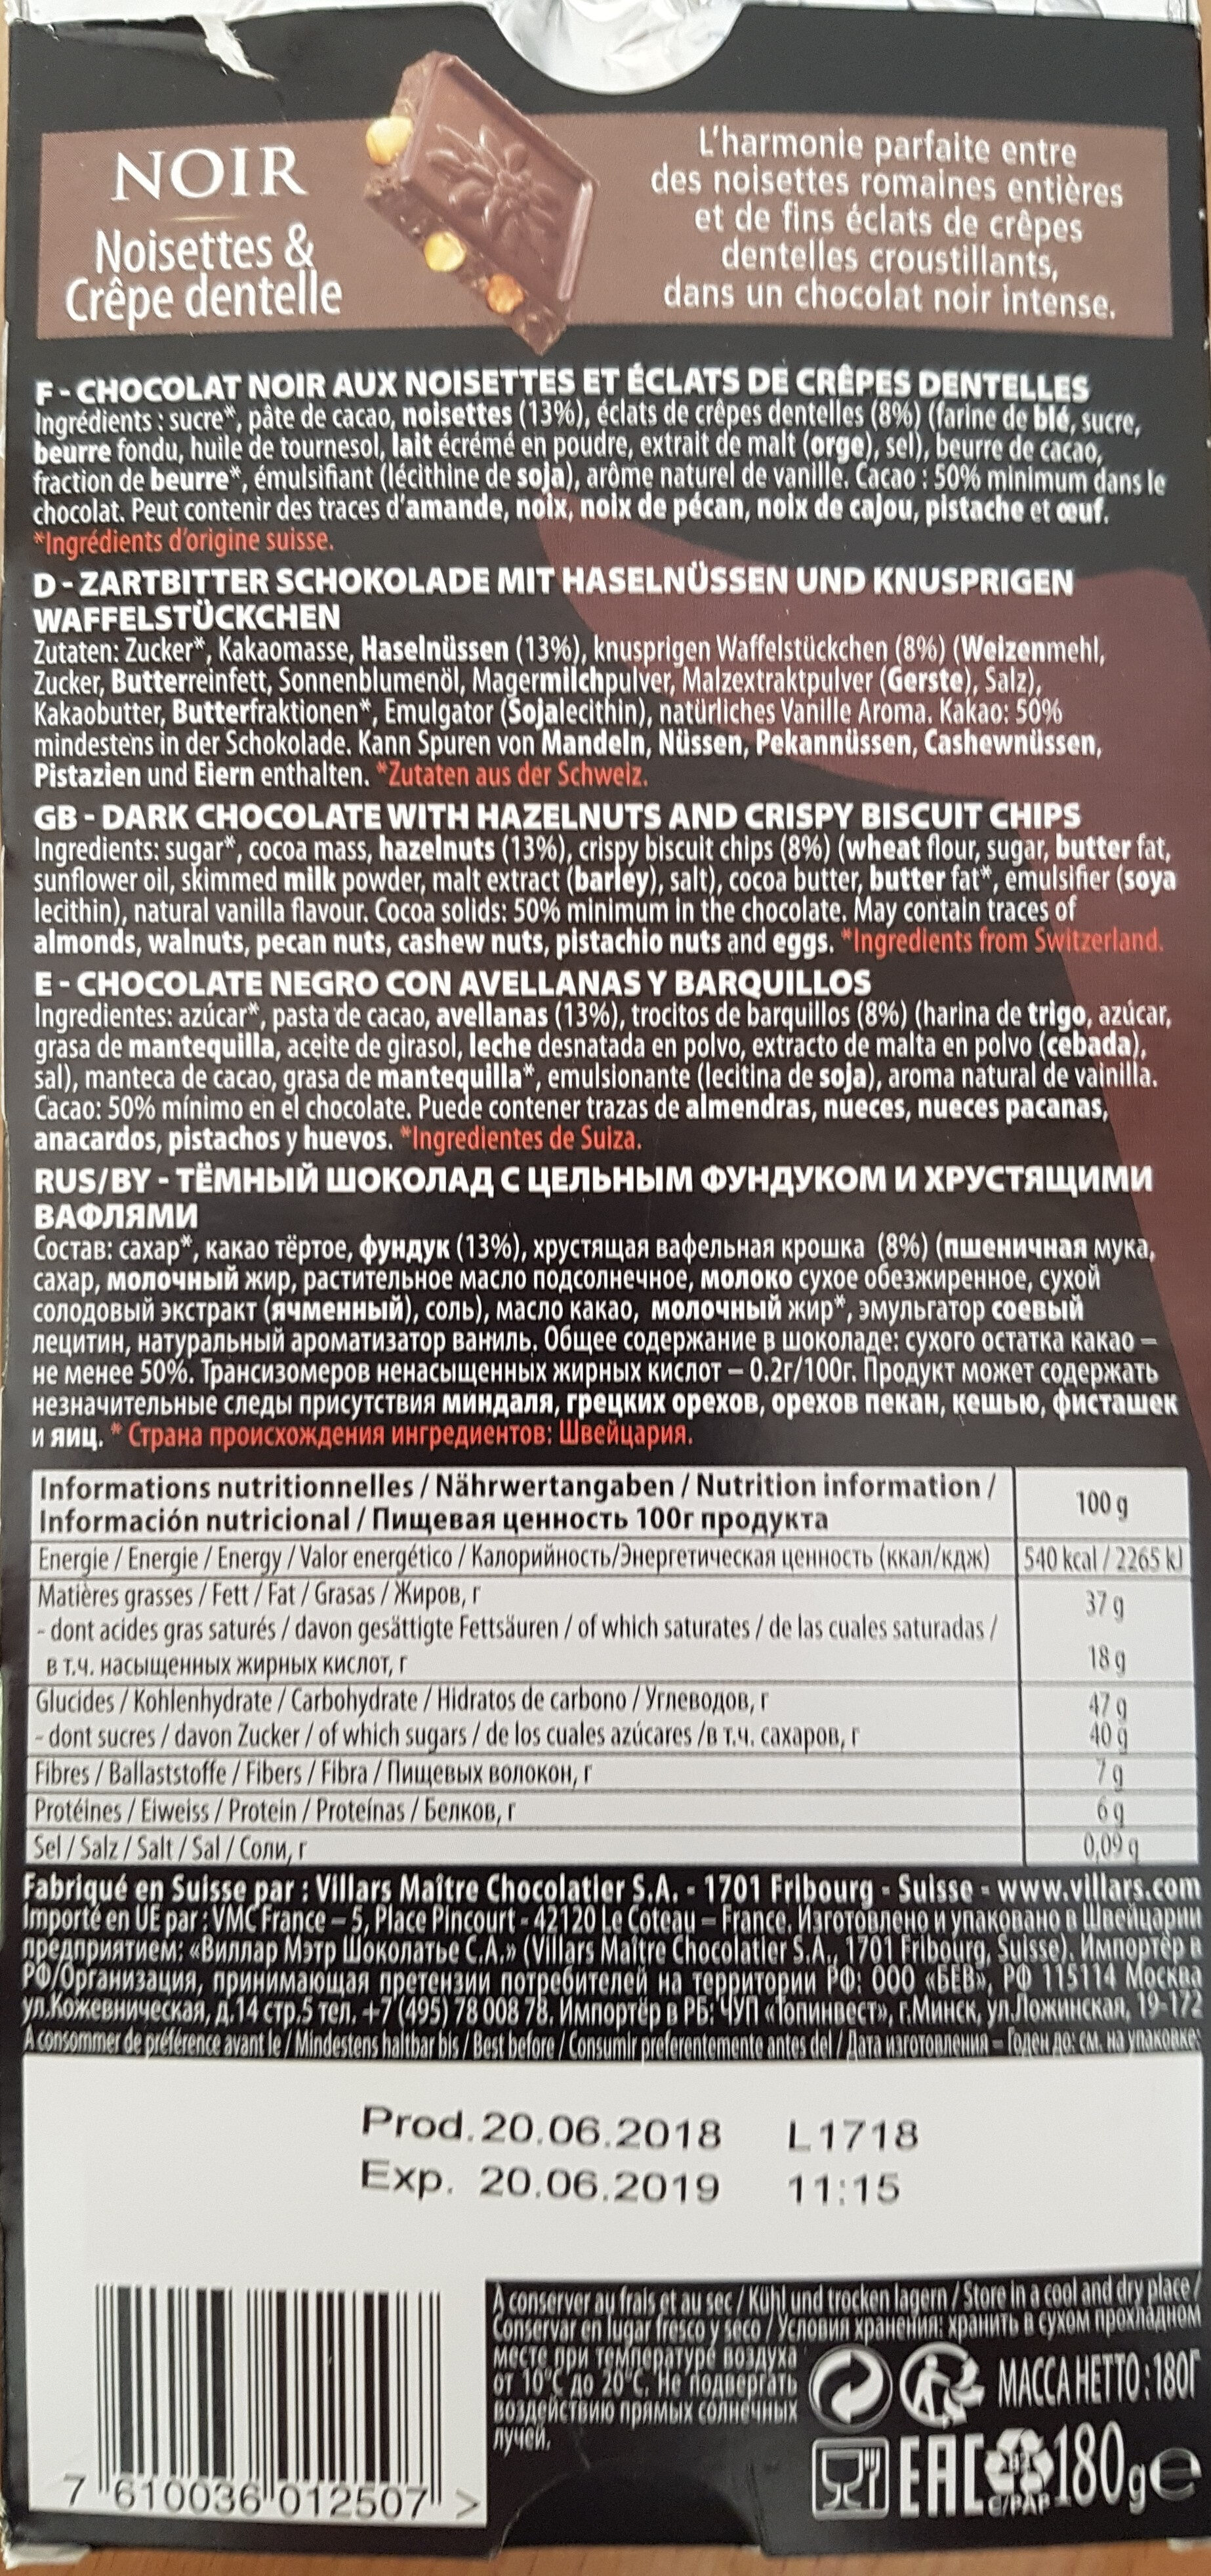 villars pur chocolat suisse noir noisettes et crêpe dentelle - Ingredients - fr